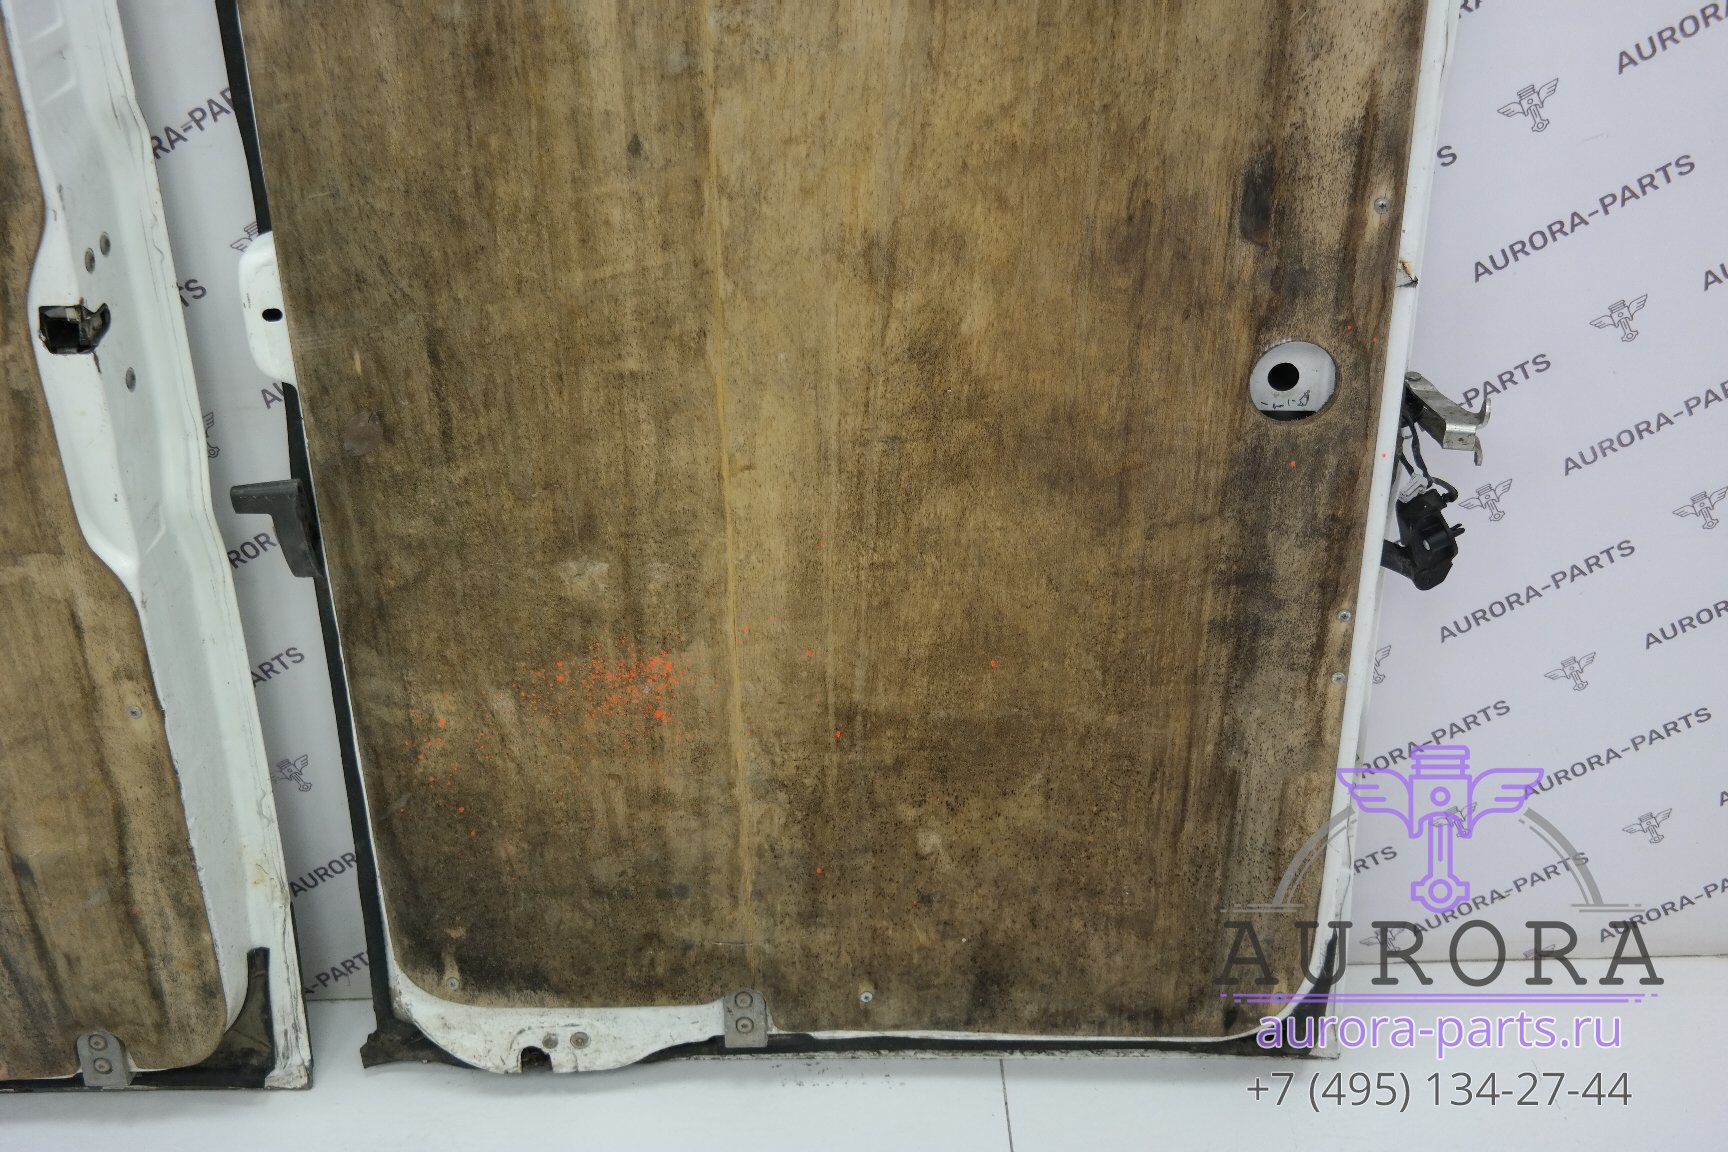 Двери задние в сборе продажа парой (190x83)